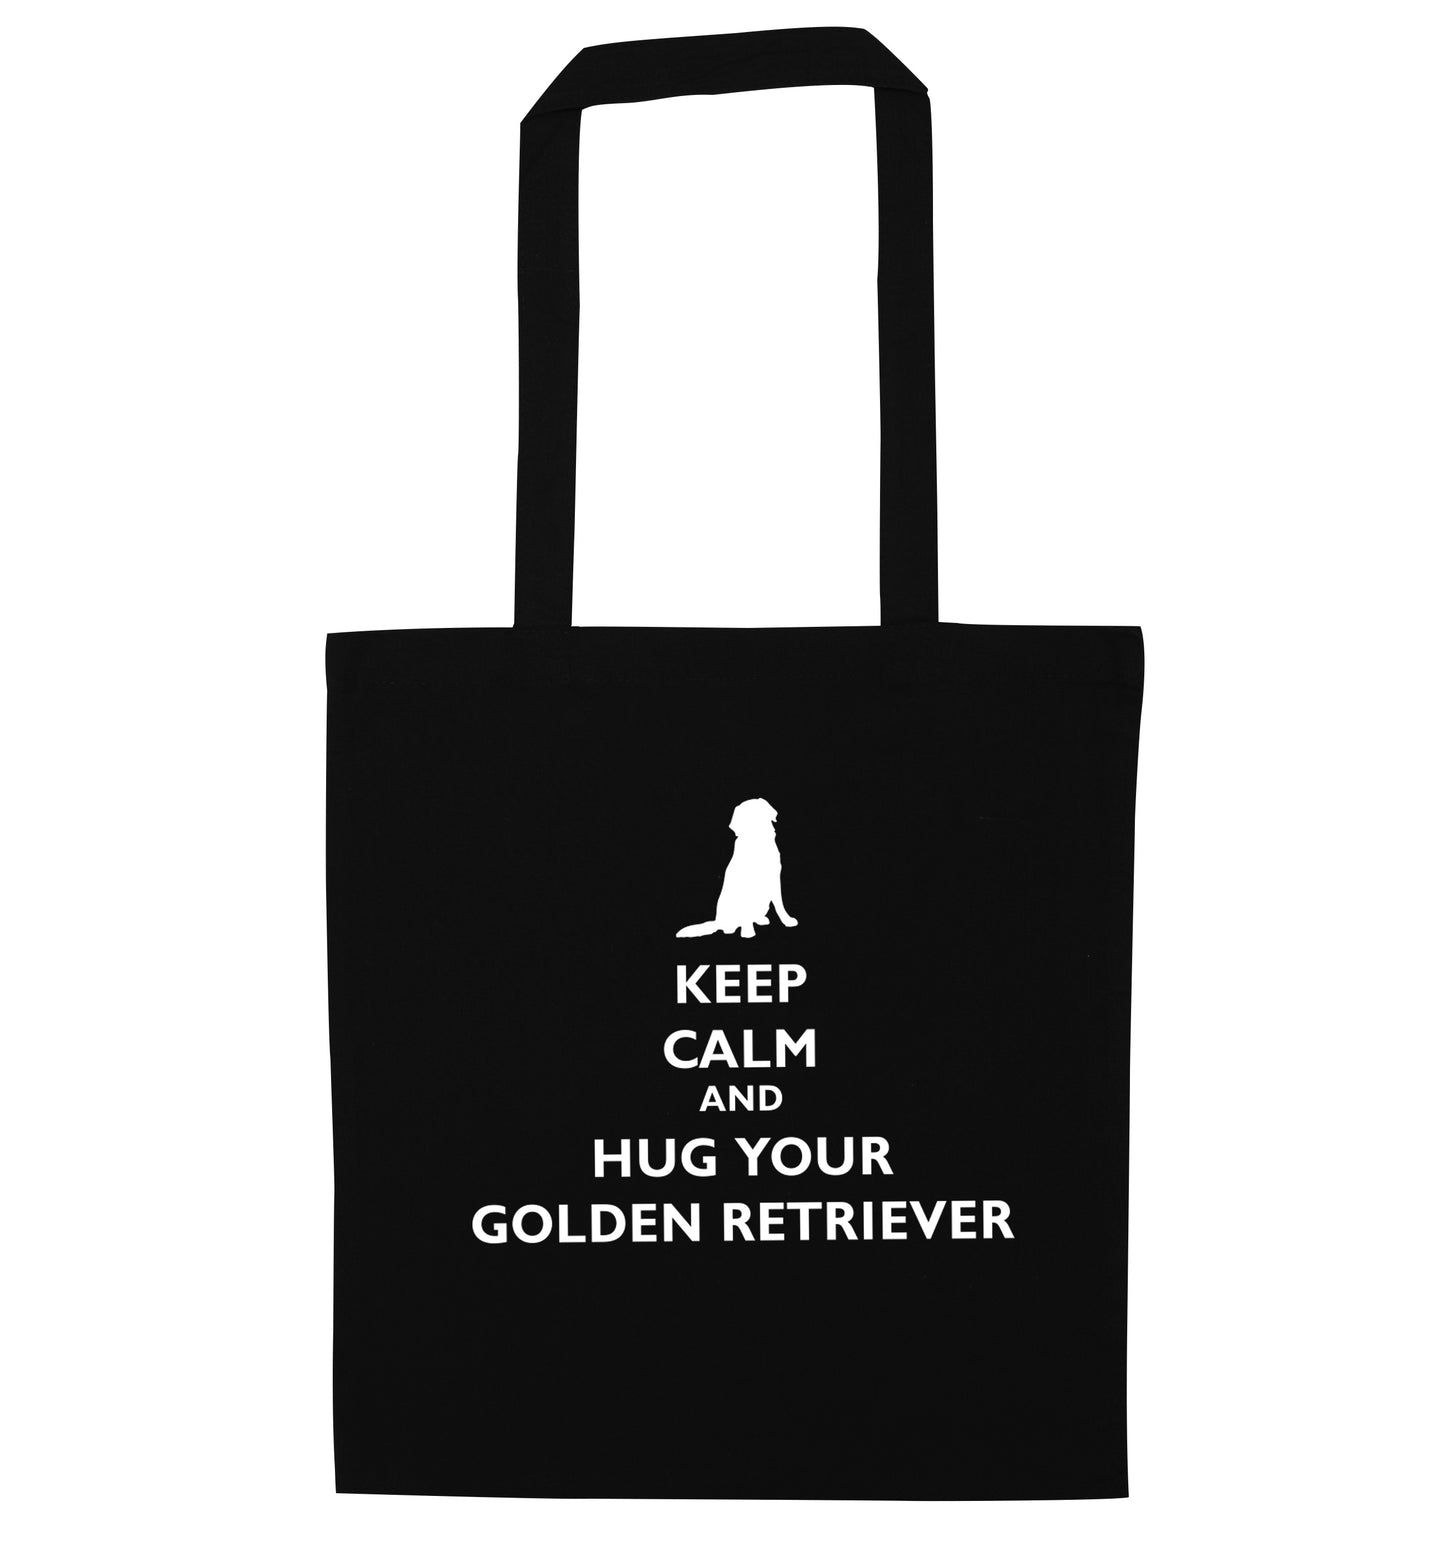 Keep calm and hug your golden retriever black tote bag